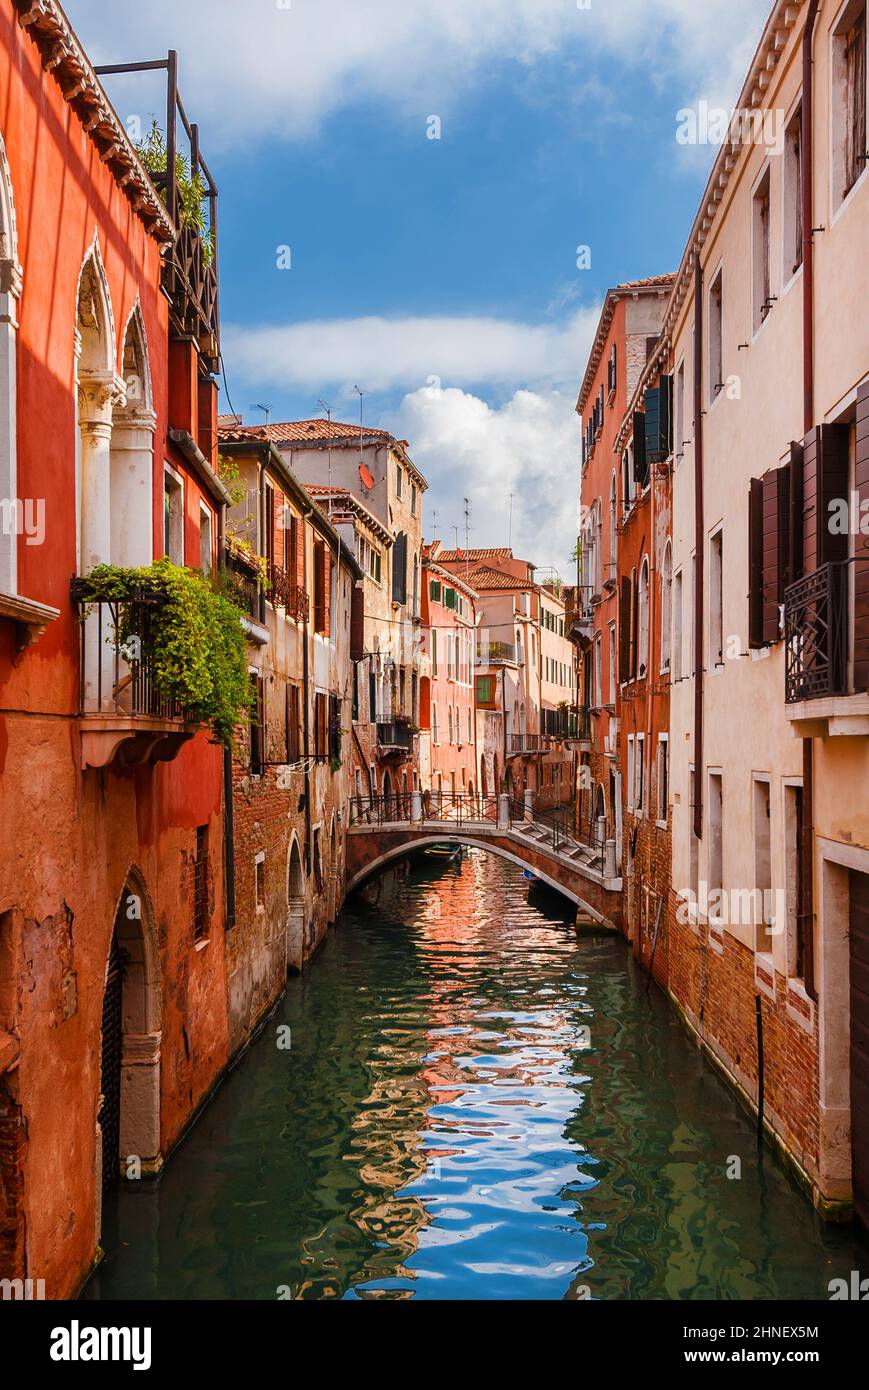 Blick auf den Rio della Toletta, einen charakteristischen Kanal Venedigs mit alten, traditionellen und farbenfrohen Häusern im ruhigen Dorsoduro-Viertel Stockfoto